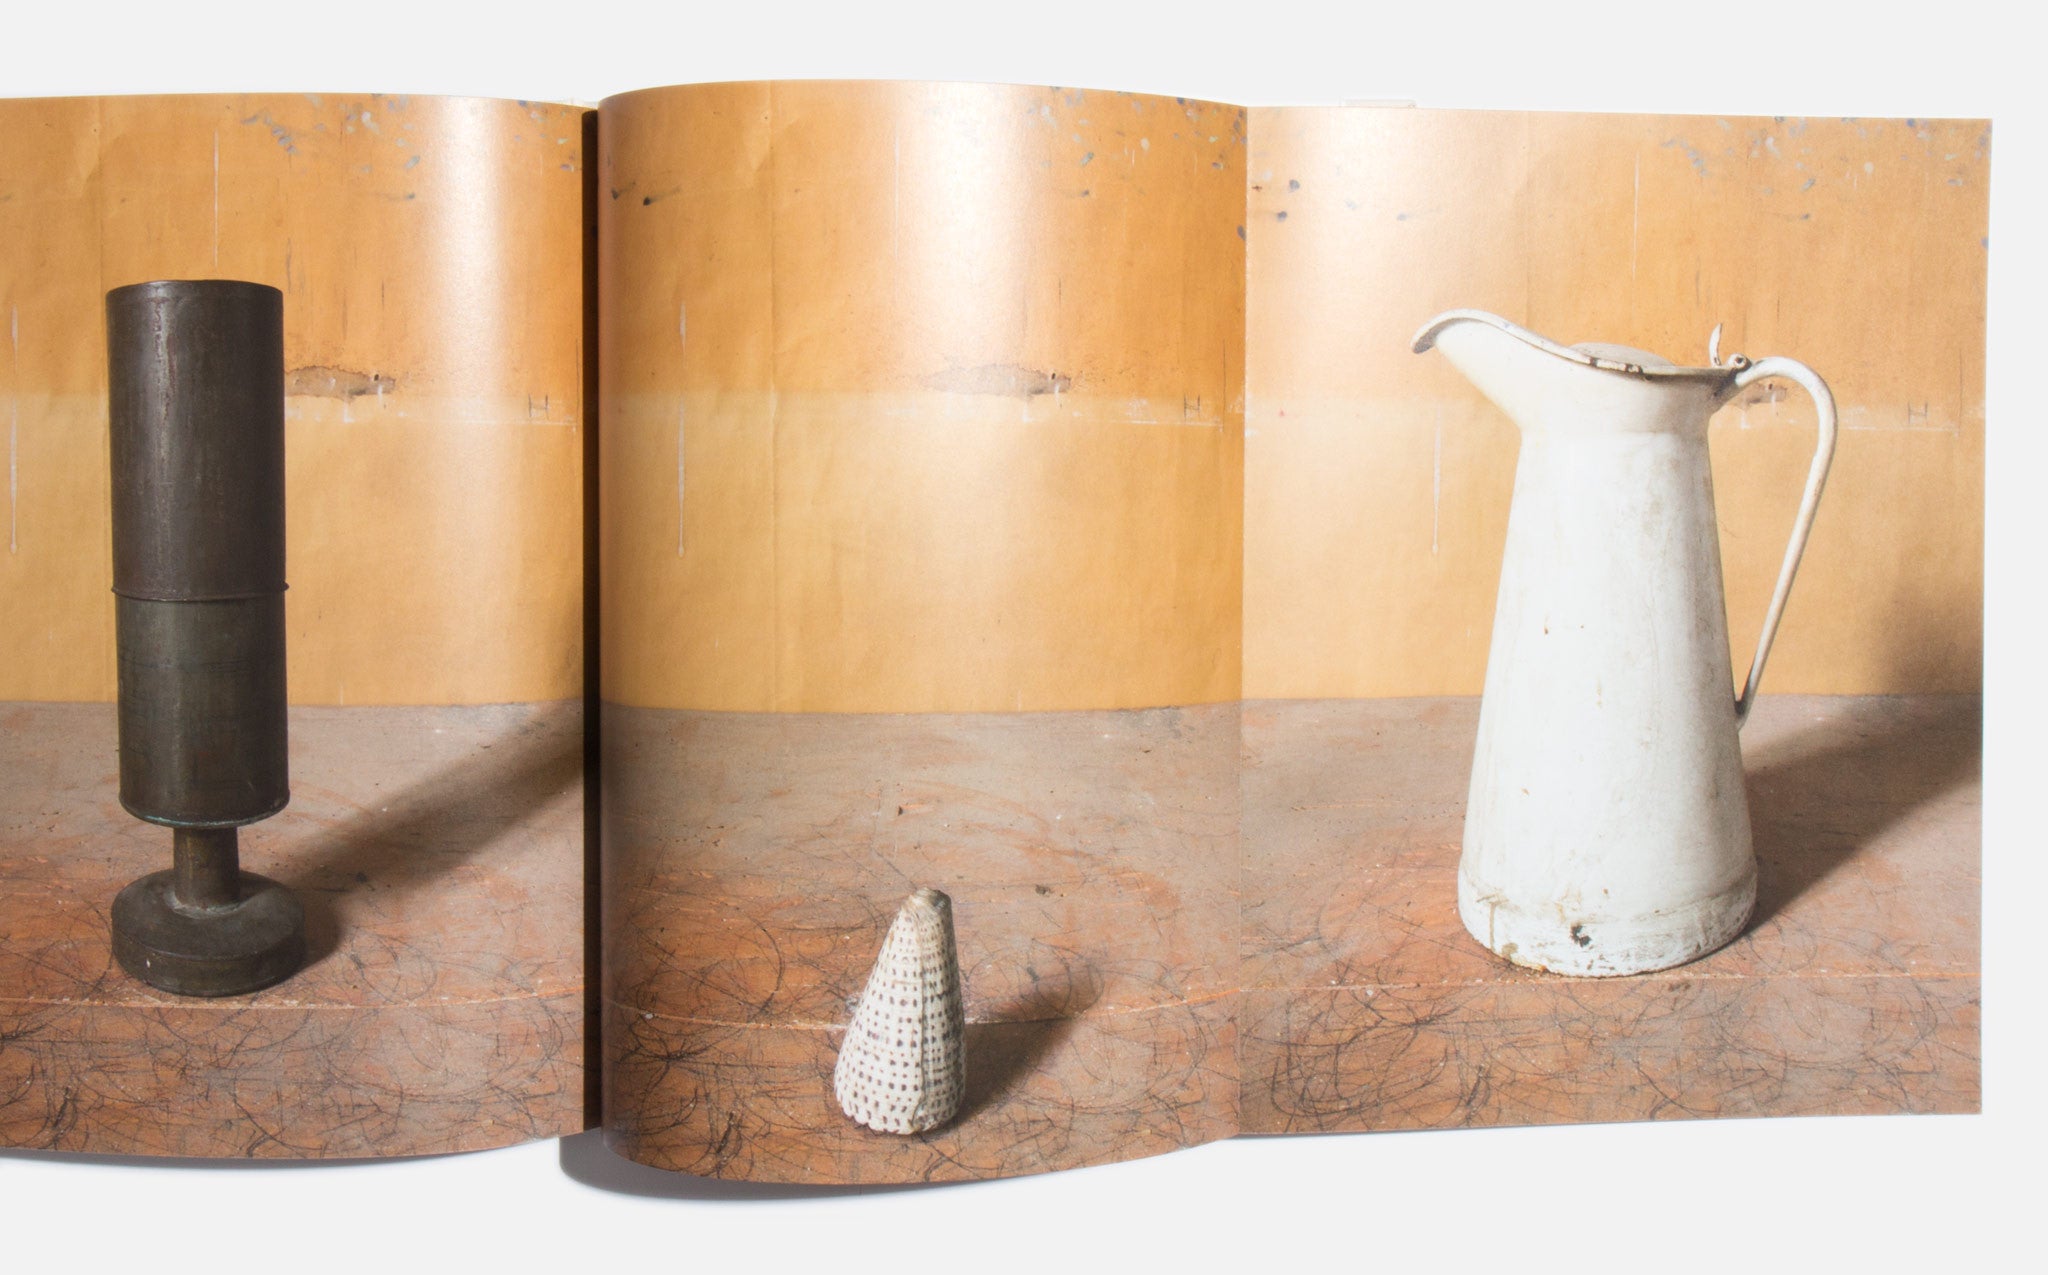 Morandi's Objects - Joel Meyerowitz